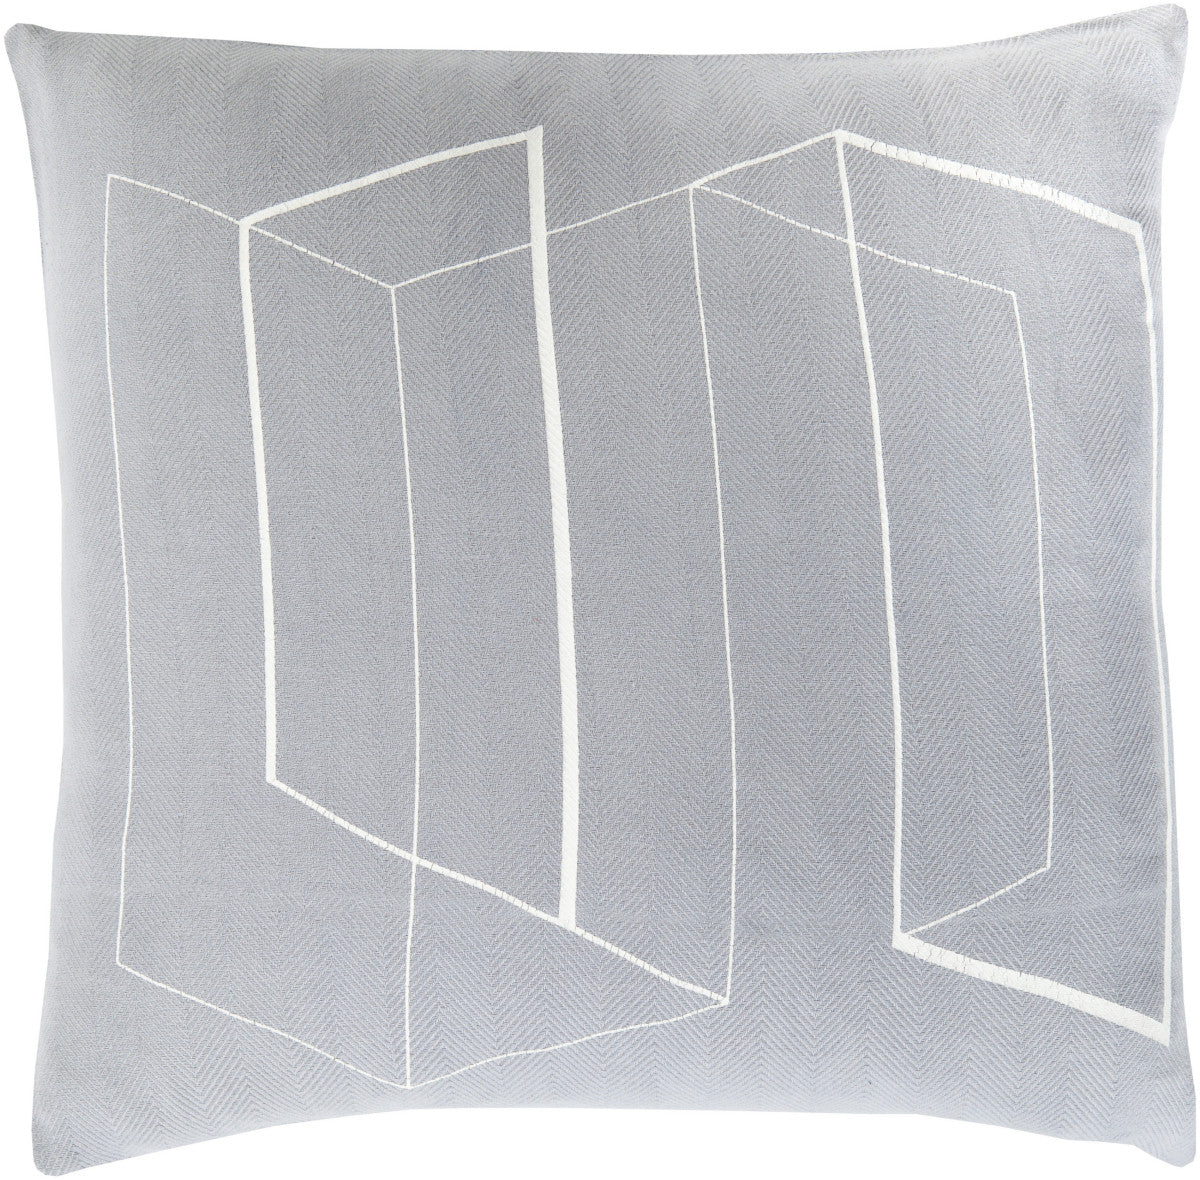 Surya Teori Lines and Angles TO-011 Pillow